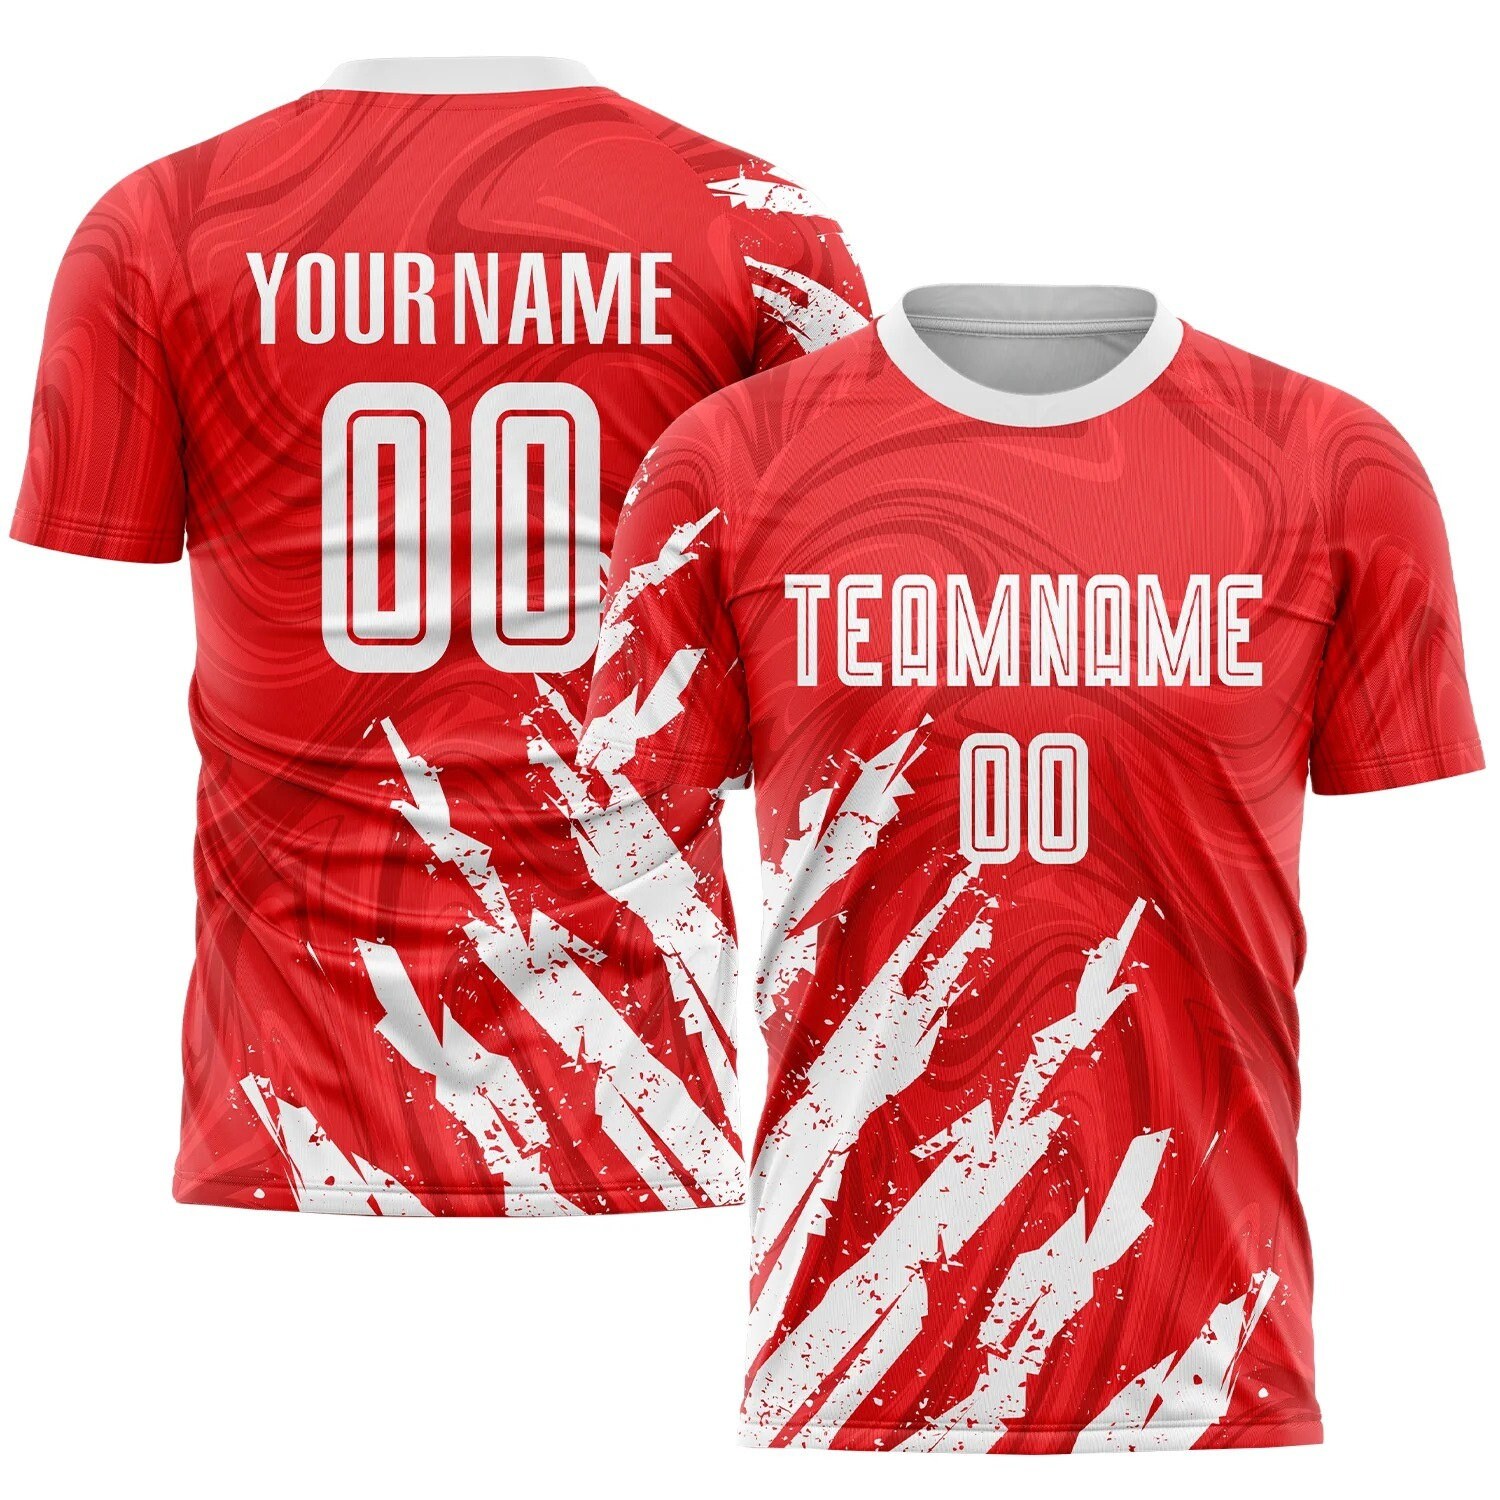 Discover Conjunto de Fútbol Personalizados Uniforme Rojo Blanco, Camisetas Personalizadas con Logotipo del Equipo del Número y Nombre